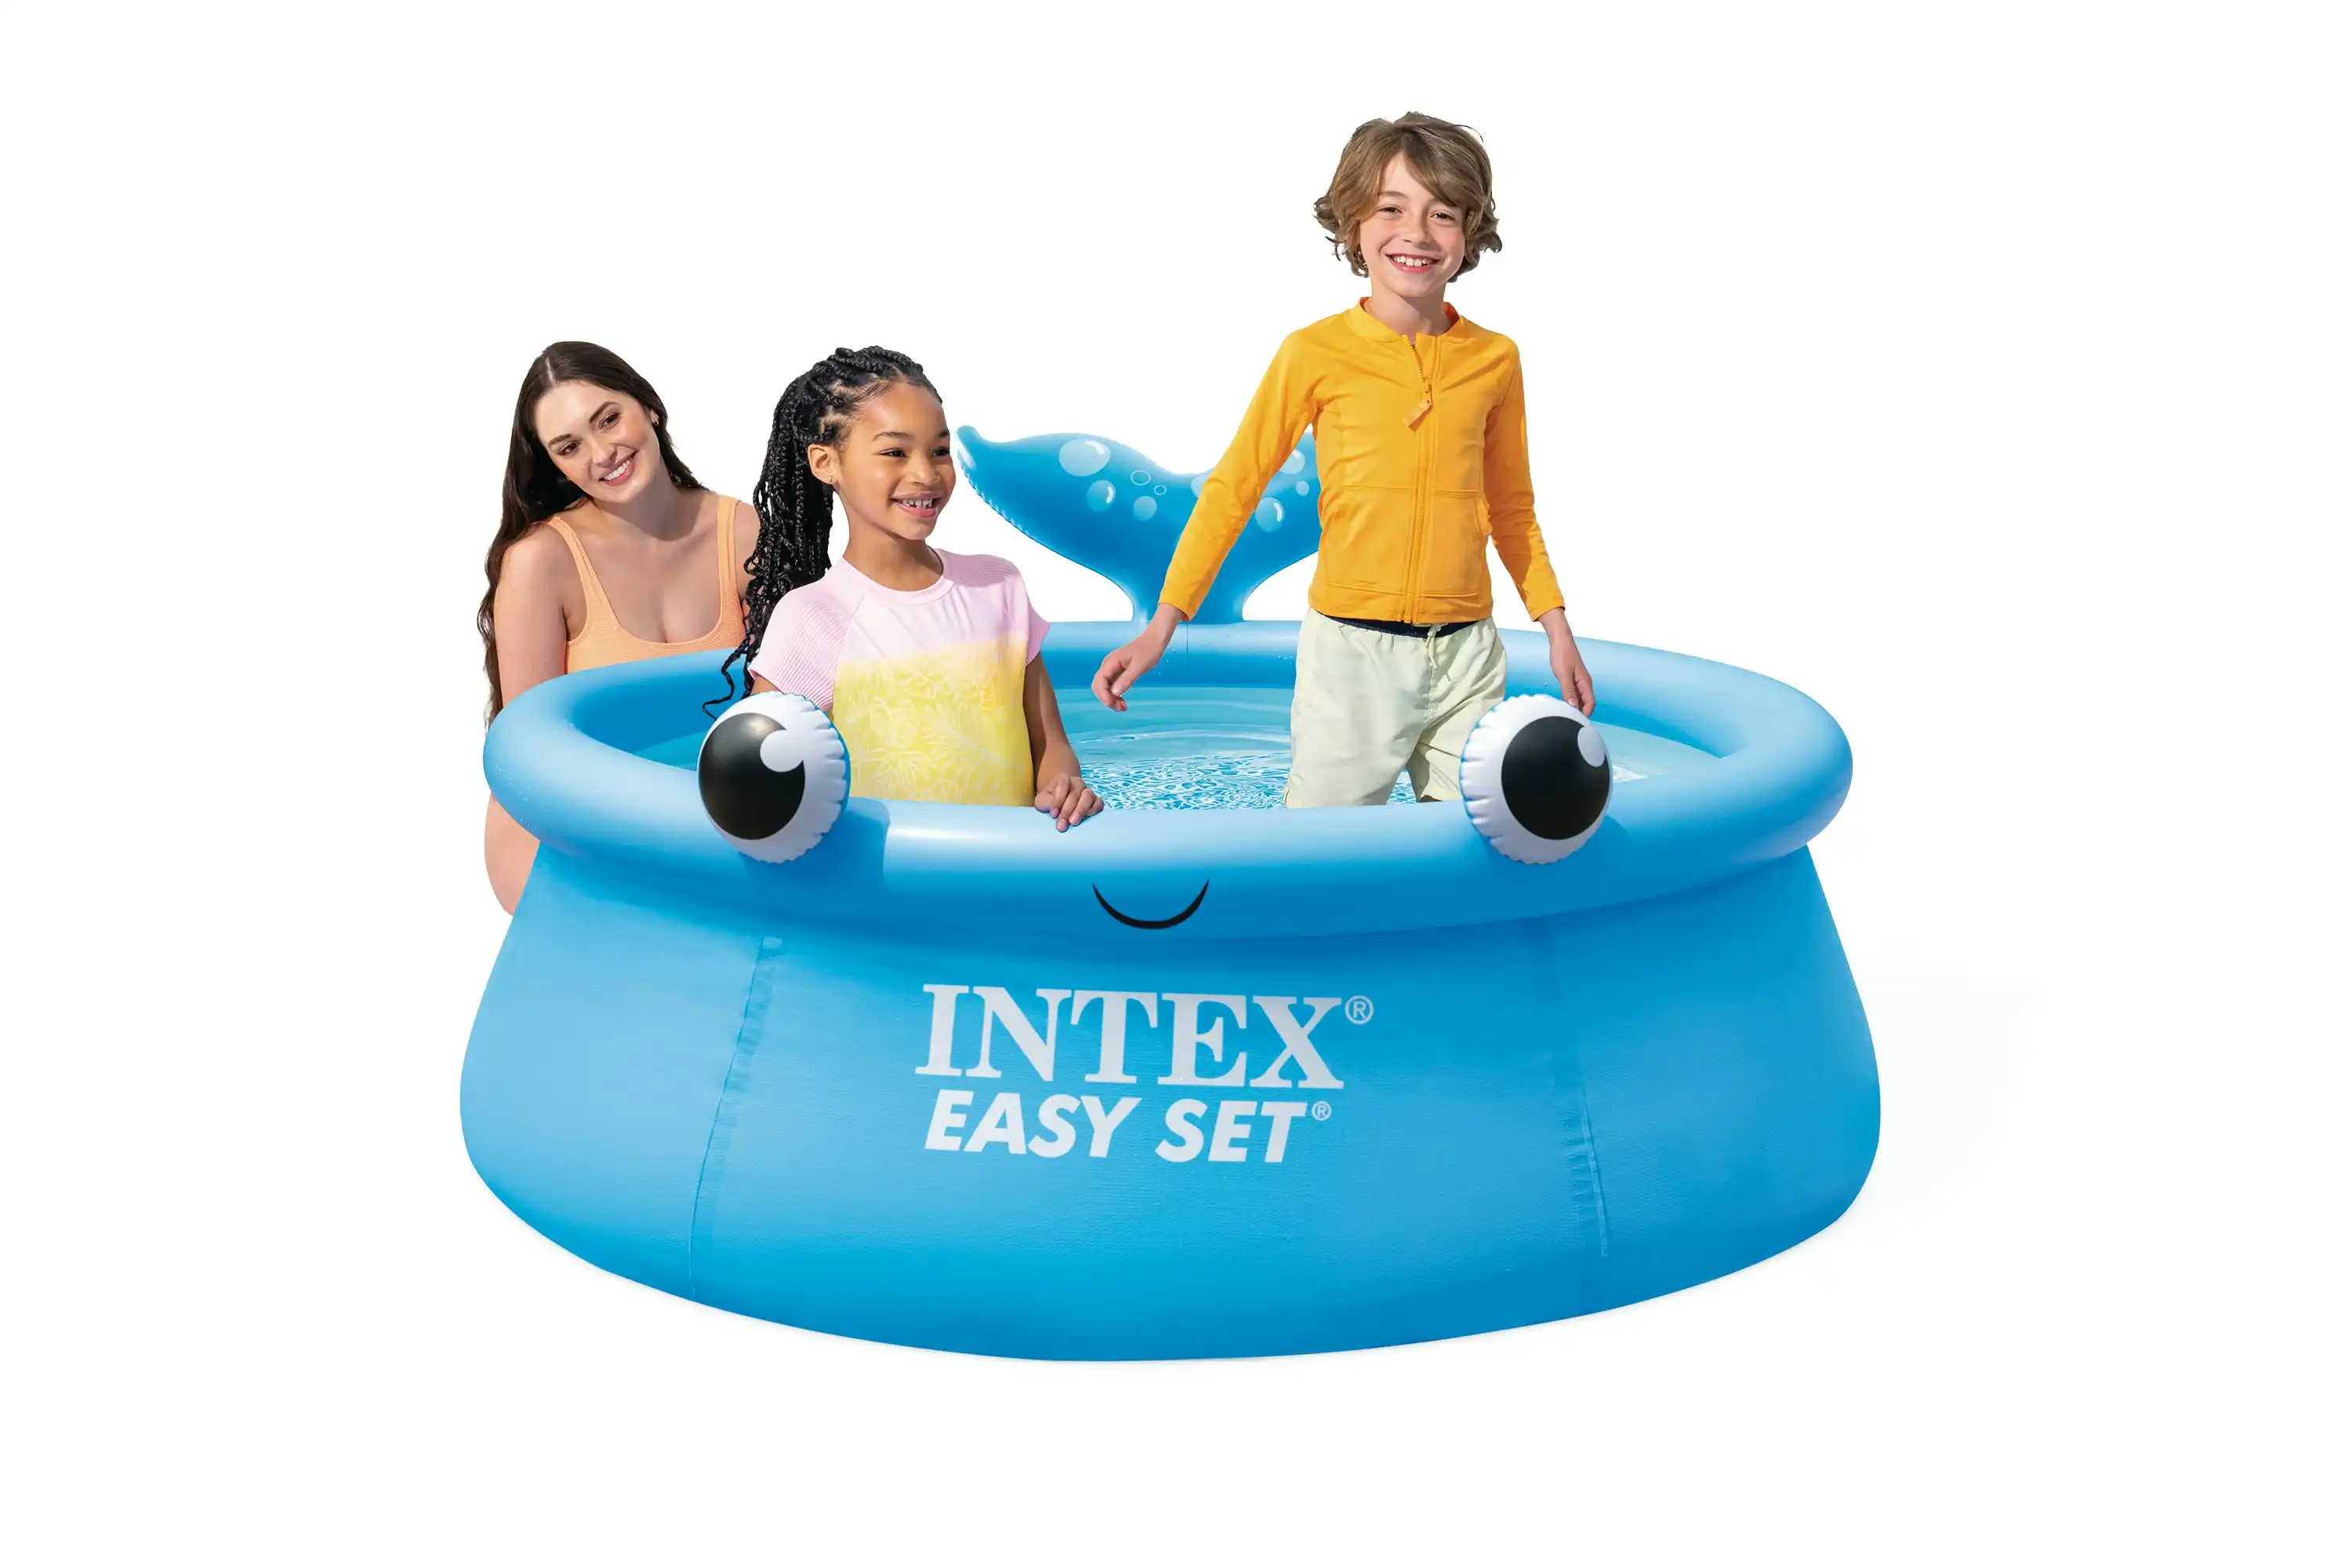 Intex Easy Set Pool Package 6' 1.83M X 51CM 26102